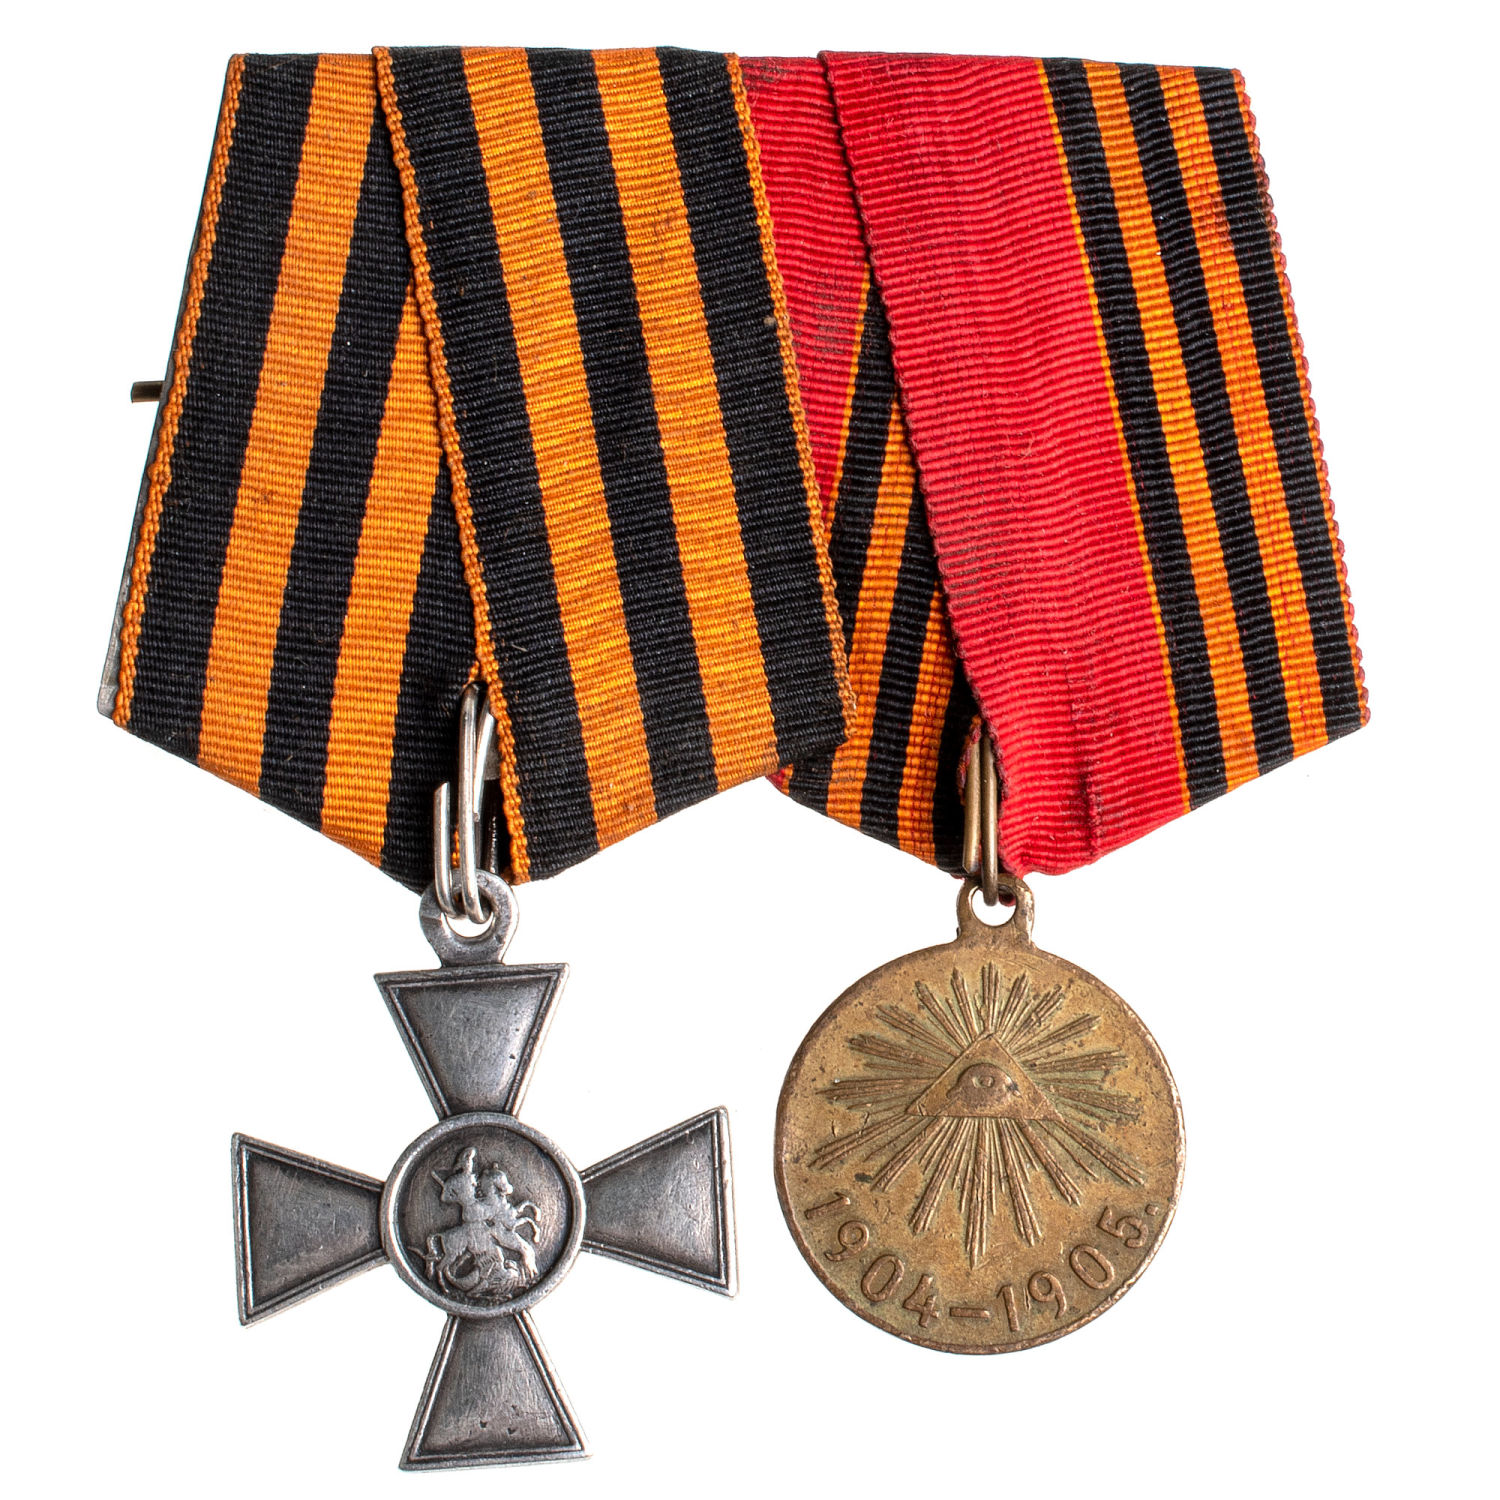 Колодка на 2 награды. ЗОВО 4 ст 173.470 и медаль "В память Русско - Японской войны 1904-1905 гг".